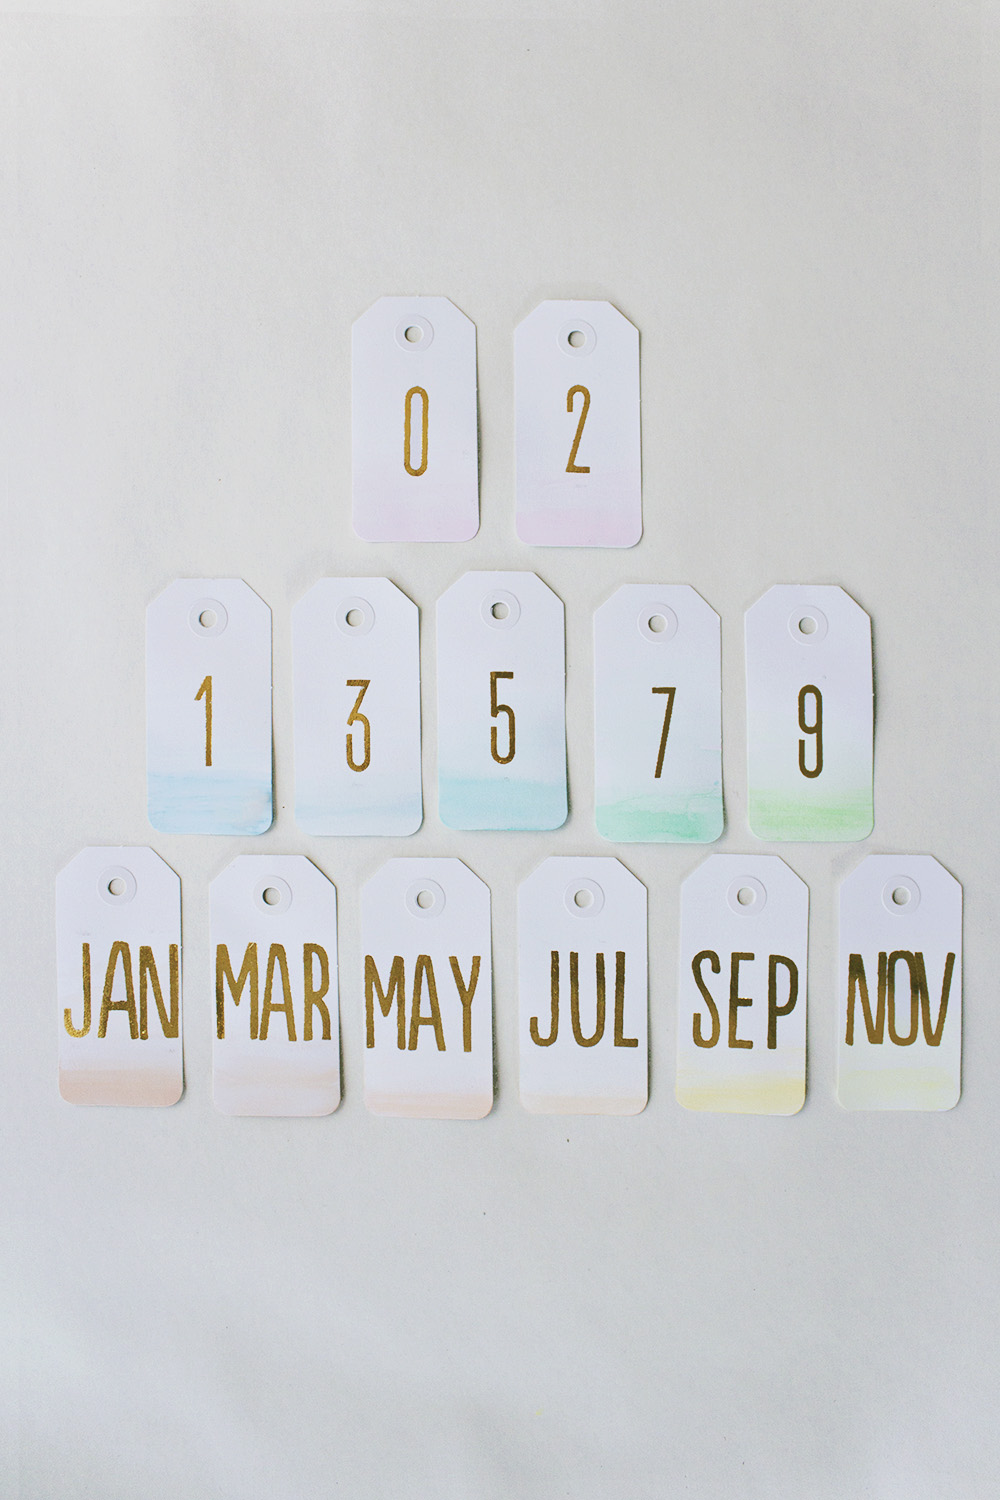 DIY Ombre Calendar